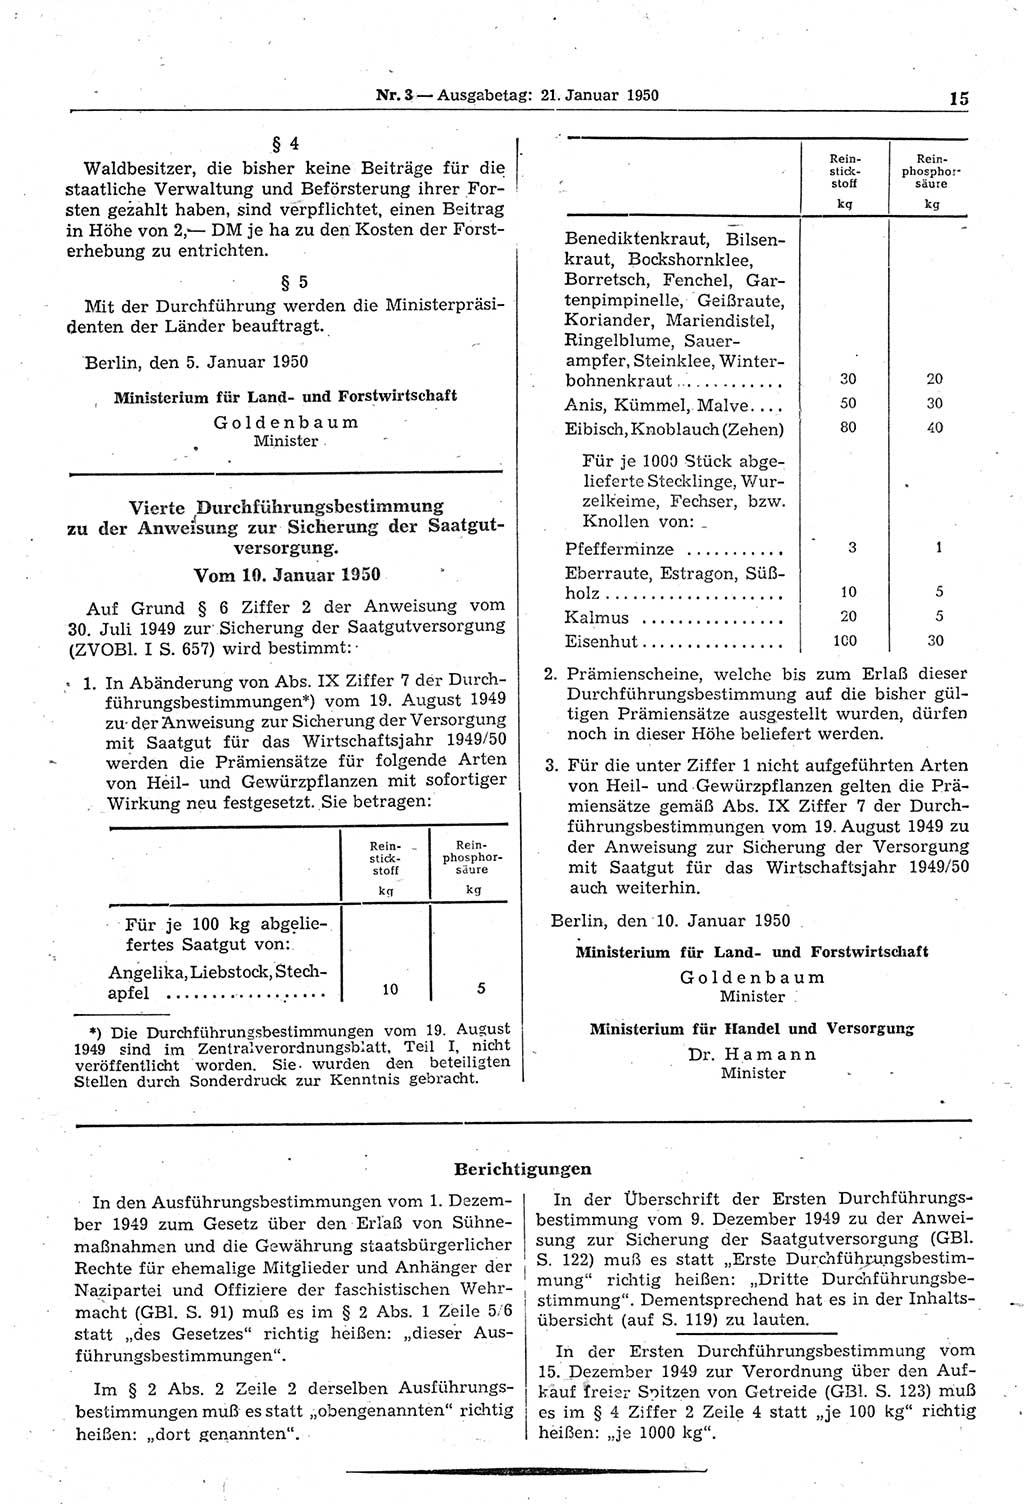 Gesetzblatt (GBl.) der Deutschen Demokratischen Republik (DDR) 1950, Seite 15 (GBl. DDR 1950, S. 15)